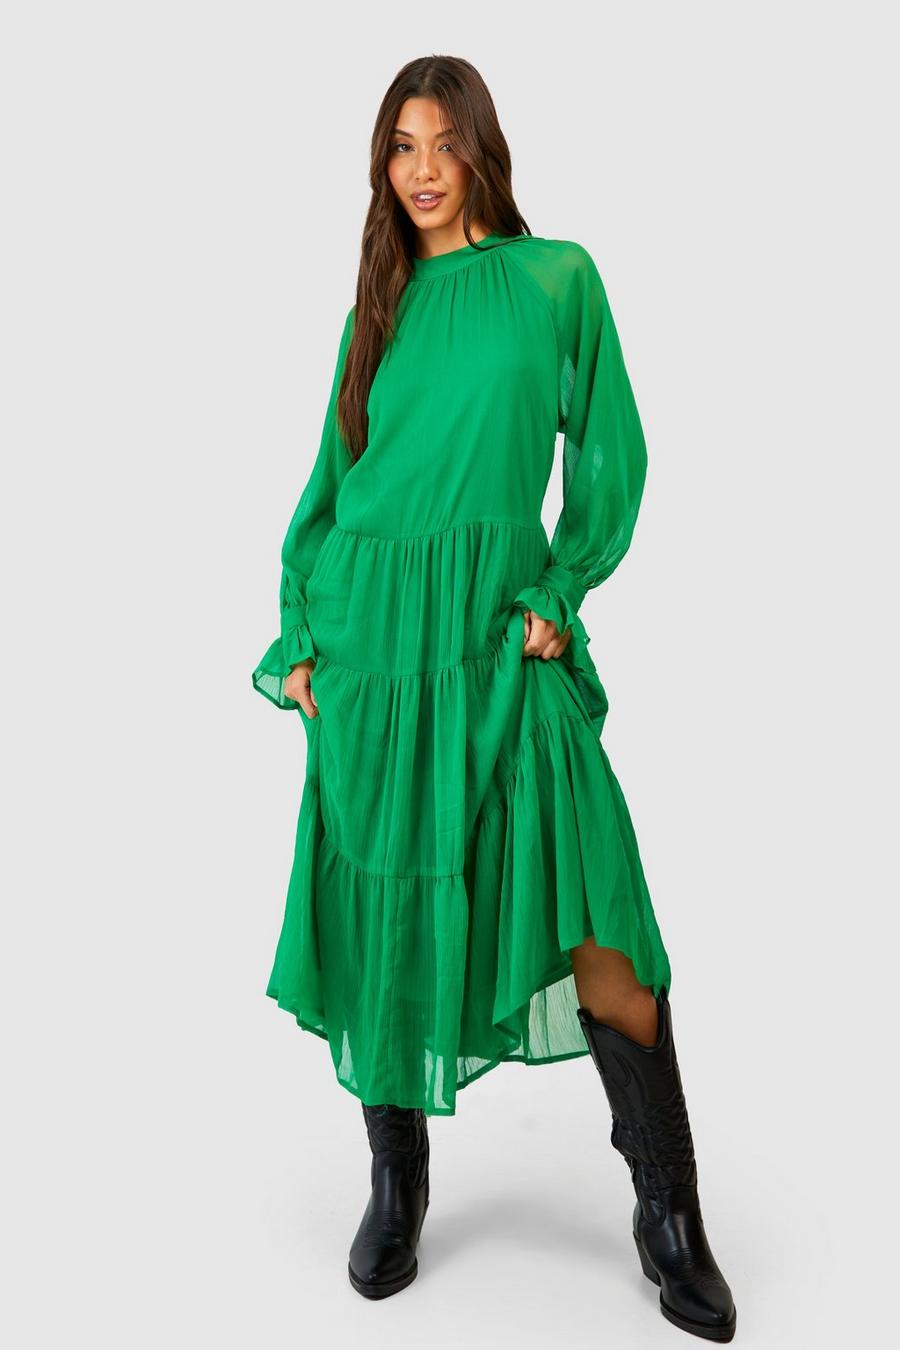 Bright green Chiffon Tiered Midi Dress